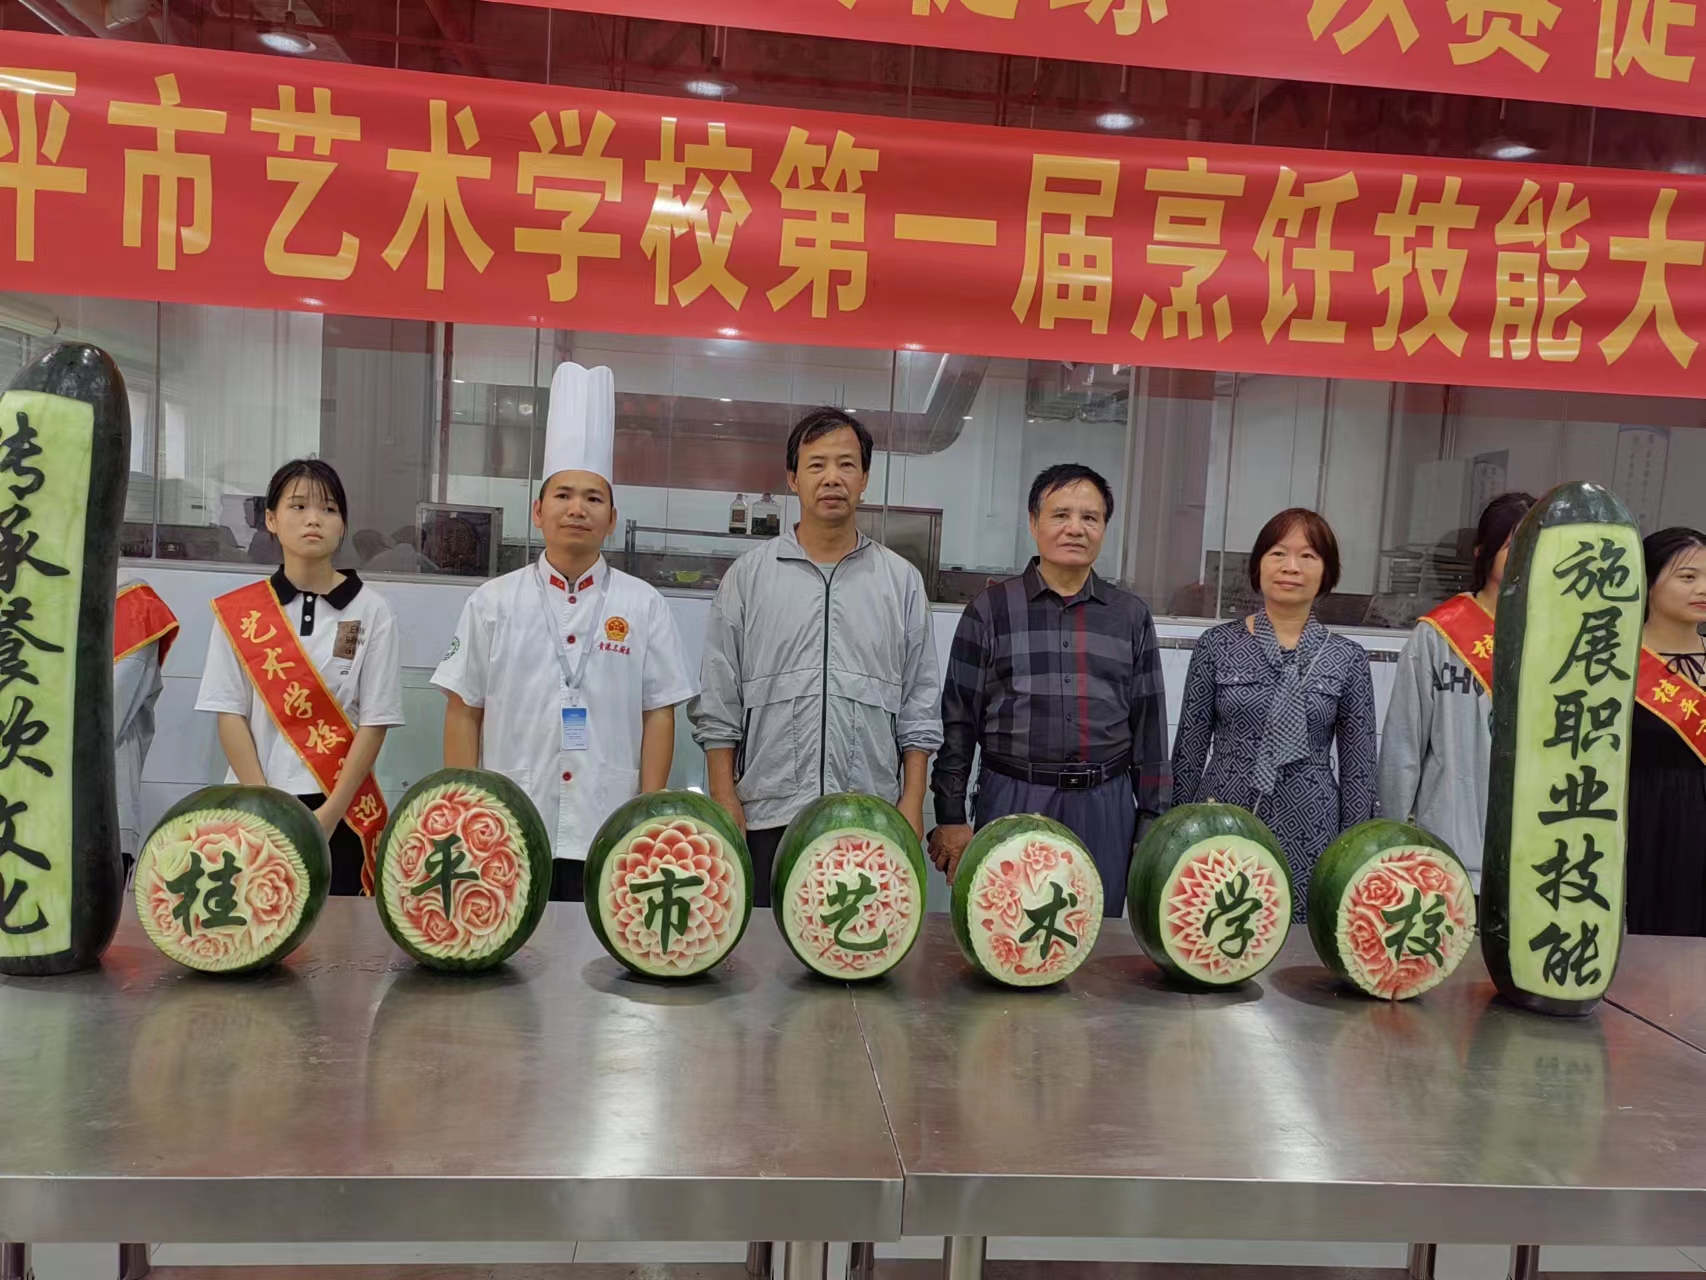 桂平市艺术学校第一届烹饪技能大赛圆满结束 丨 桂平市艺术学校